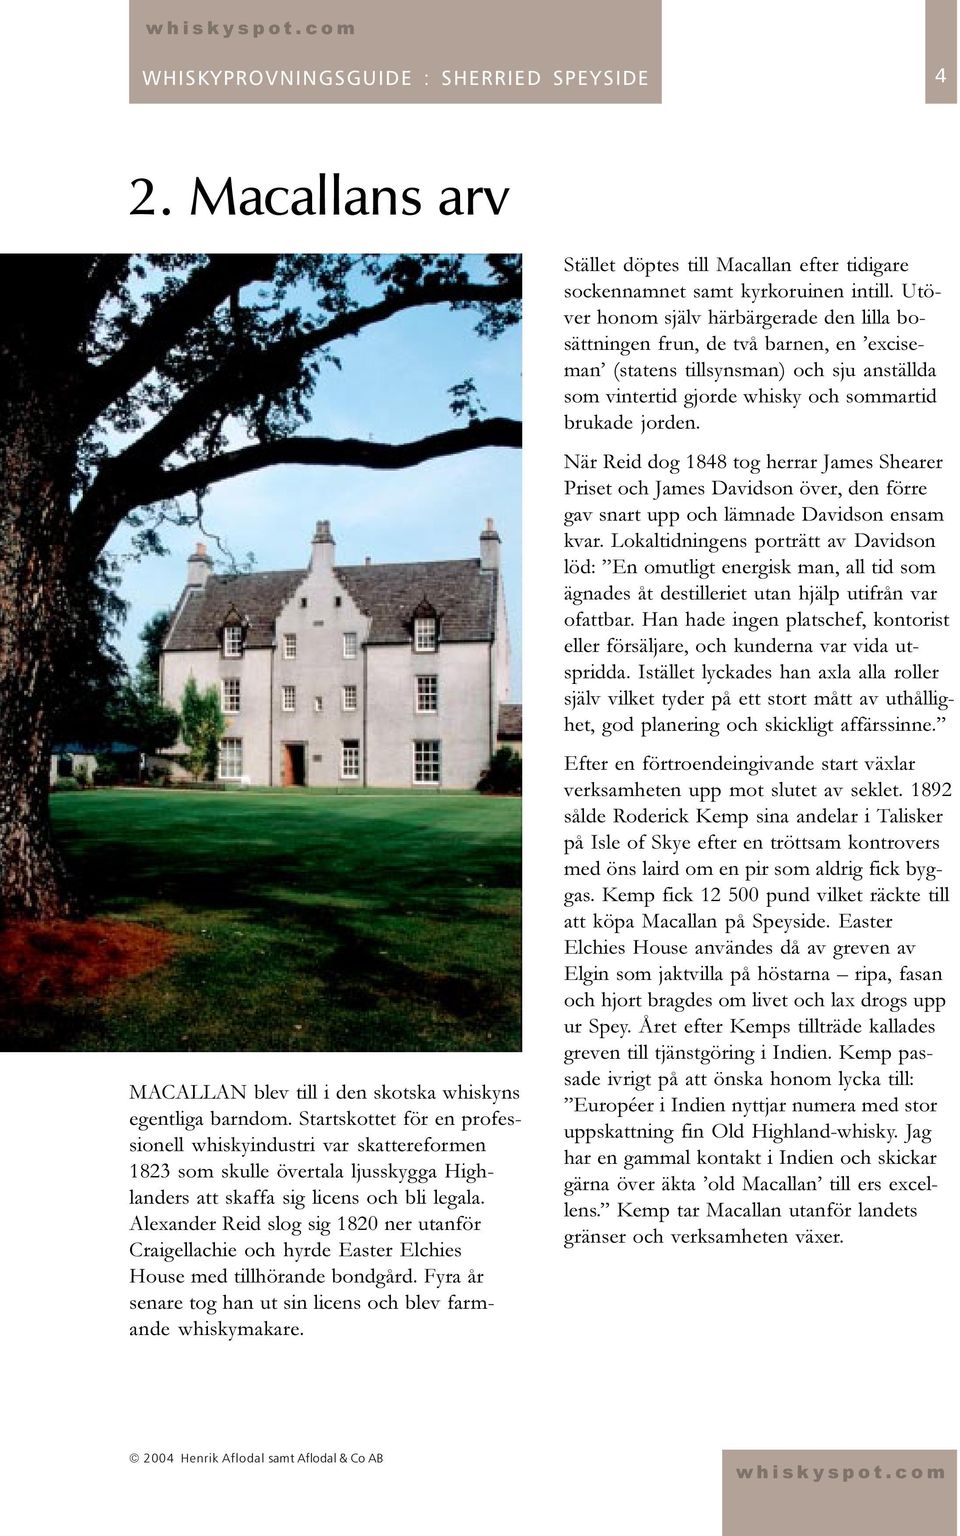 Alexander Reid slog sig 1820 ner utanför Craigellachie och hyrde Easter Elchies House med tillhörande bondgård. Fyra år senare tog han ut sin licens och blev farmande whiskymakare.